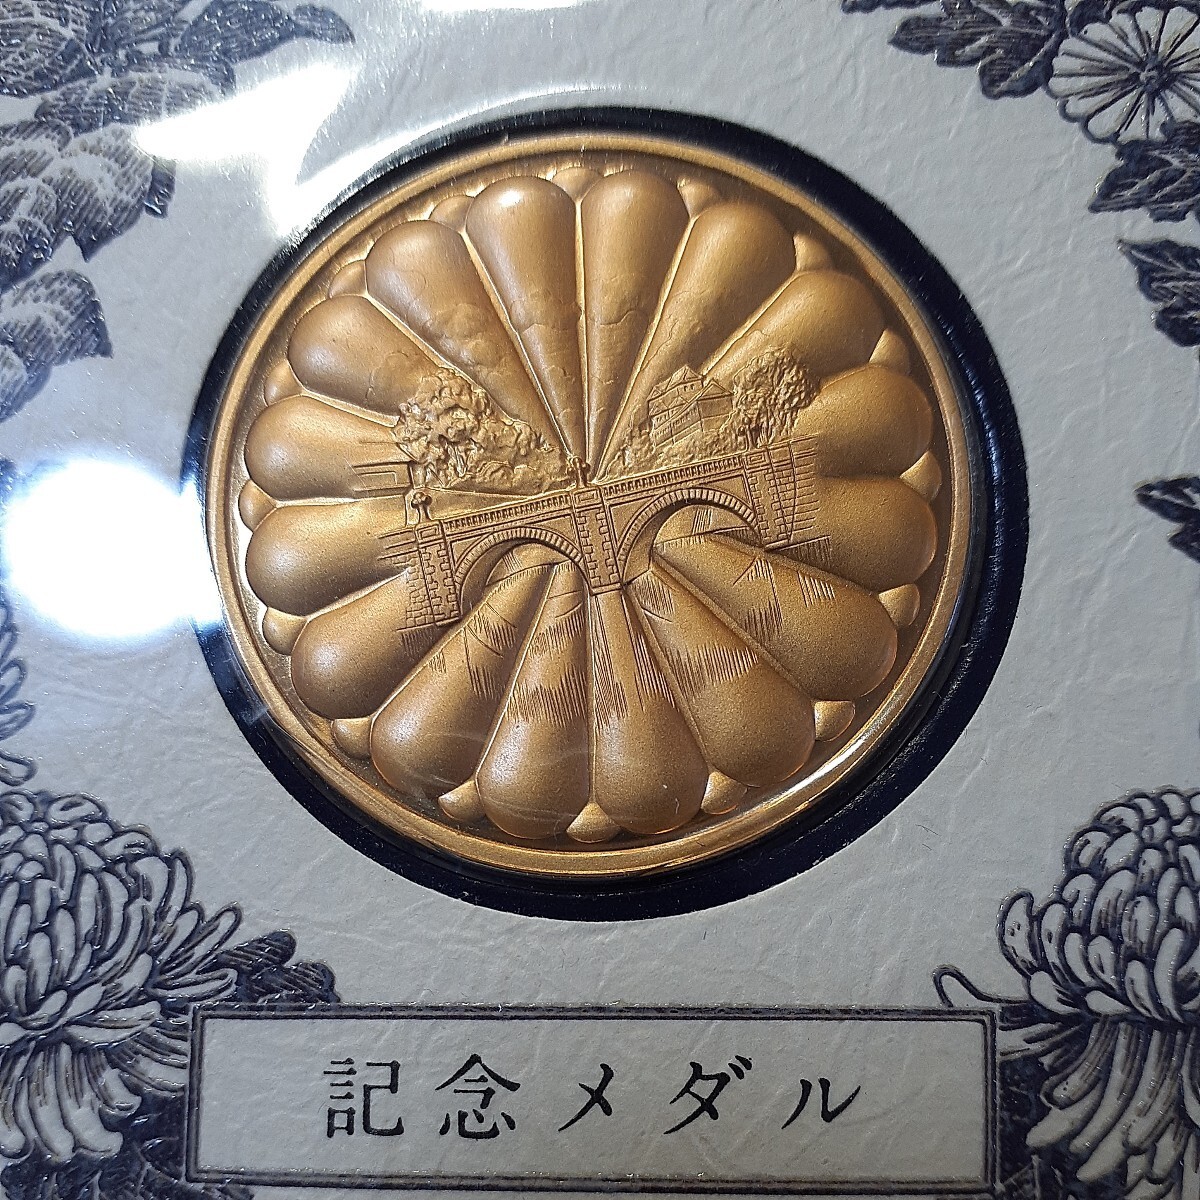 (昭和)天皇皇后両陛下御大婚六十年記念メダル(純金仕上げブロンズ製)・切手セット_画像1